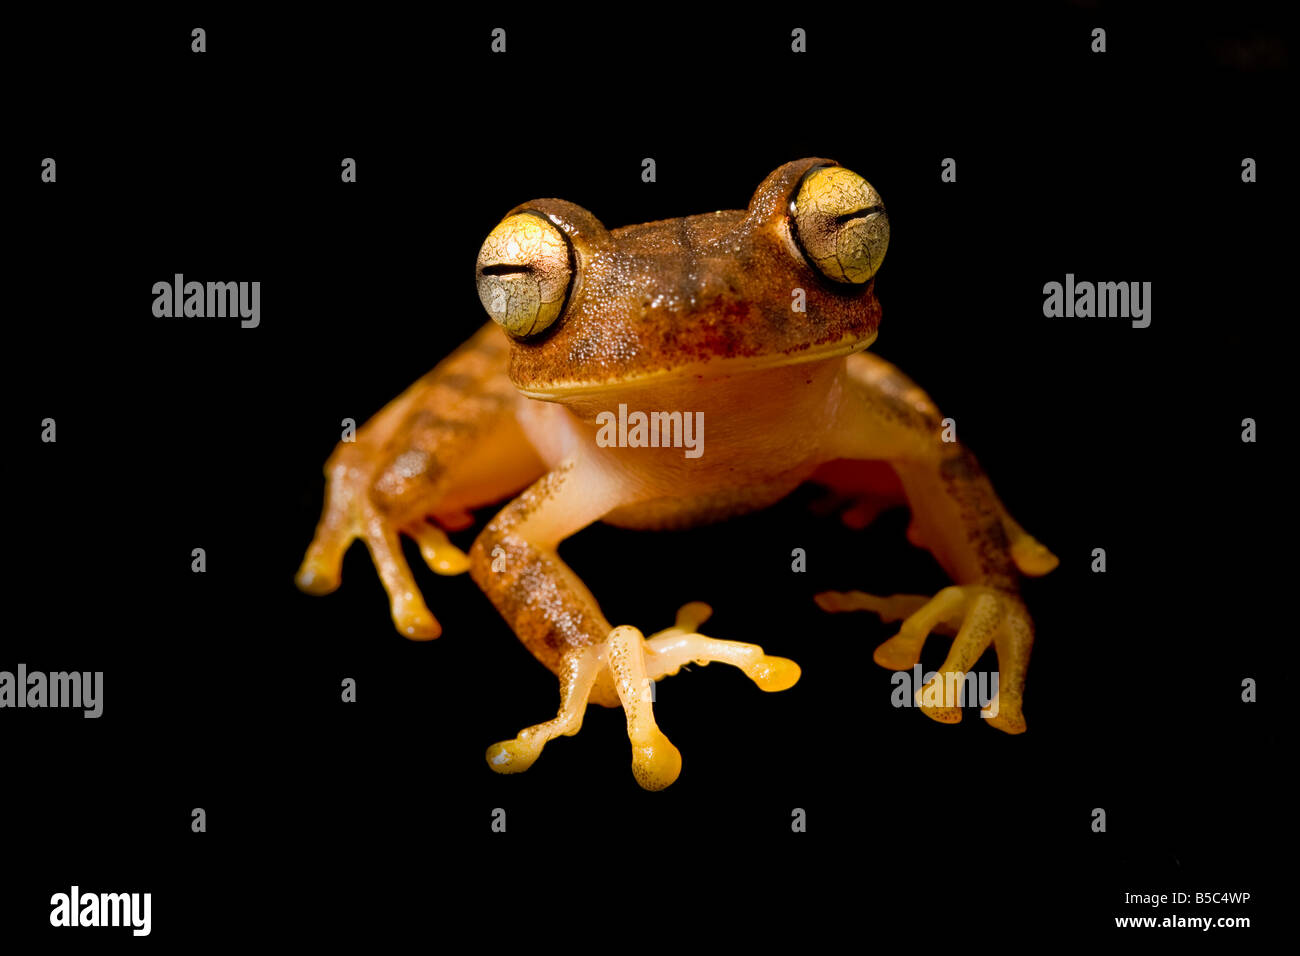 A treefrog, Hypsiboas fasciatus, in southern Ecuador Stock Photo